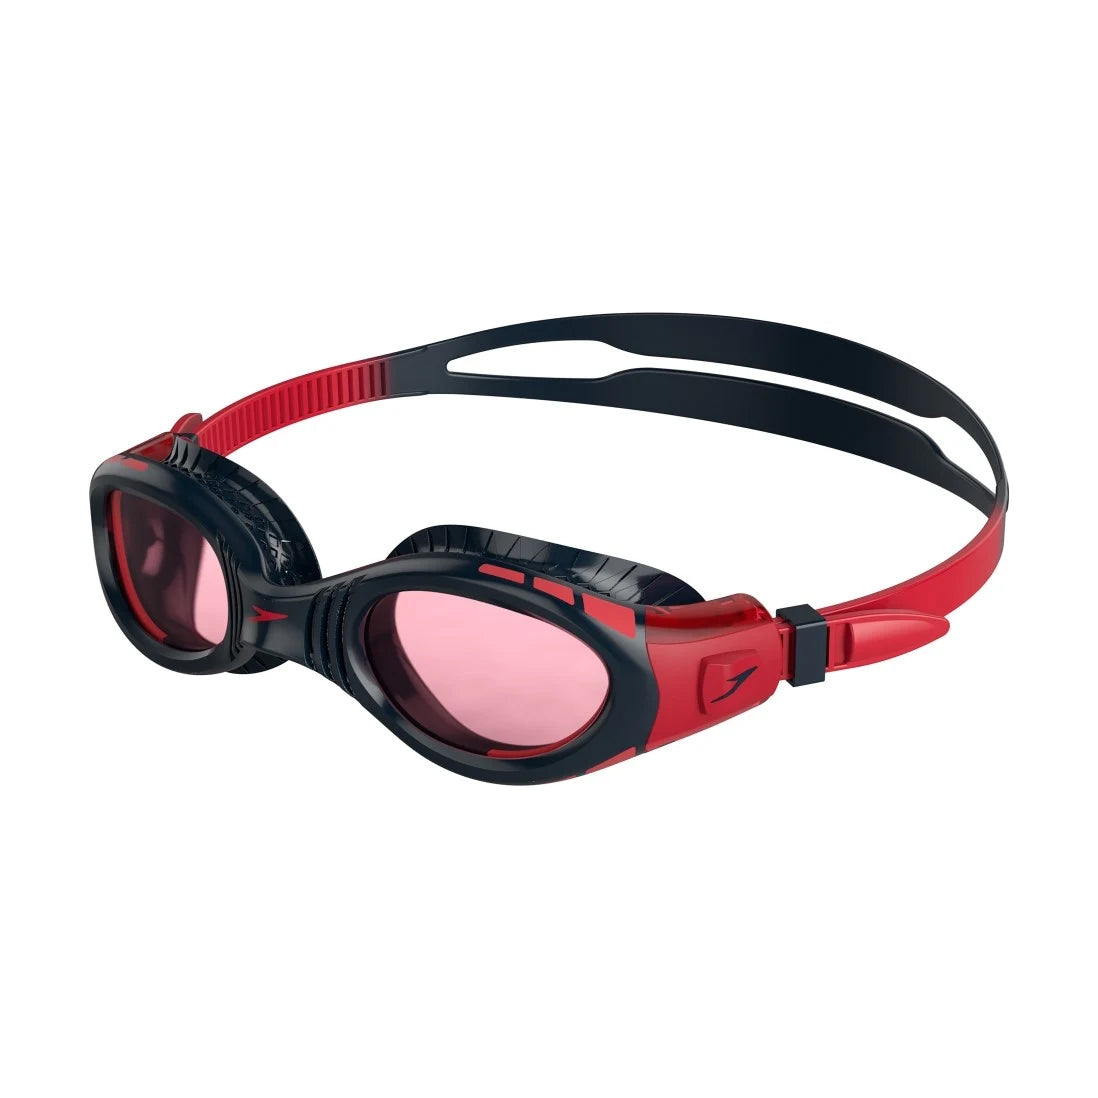 Speedo FutureBiof Fseal Dual Goggle, Junior - Navy/Red - Best Price online Prokicksports.com